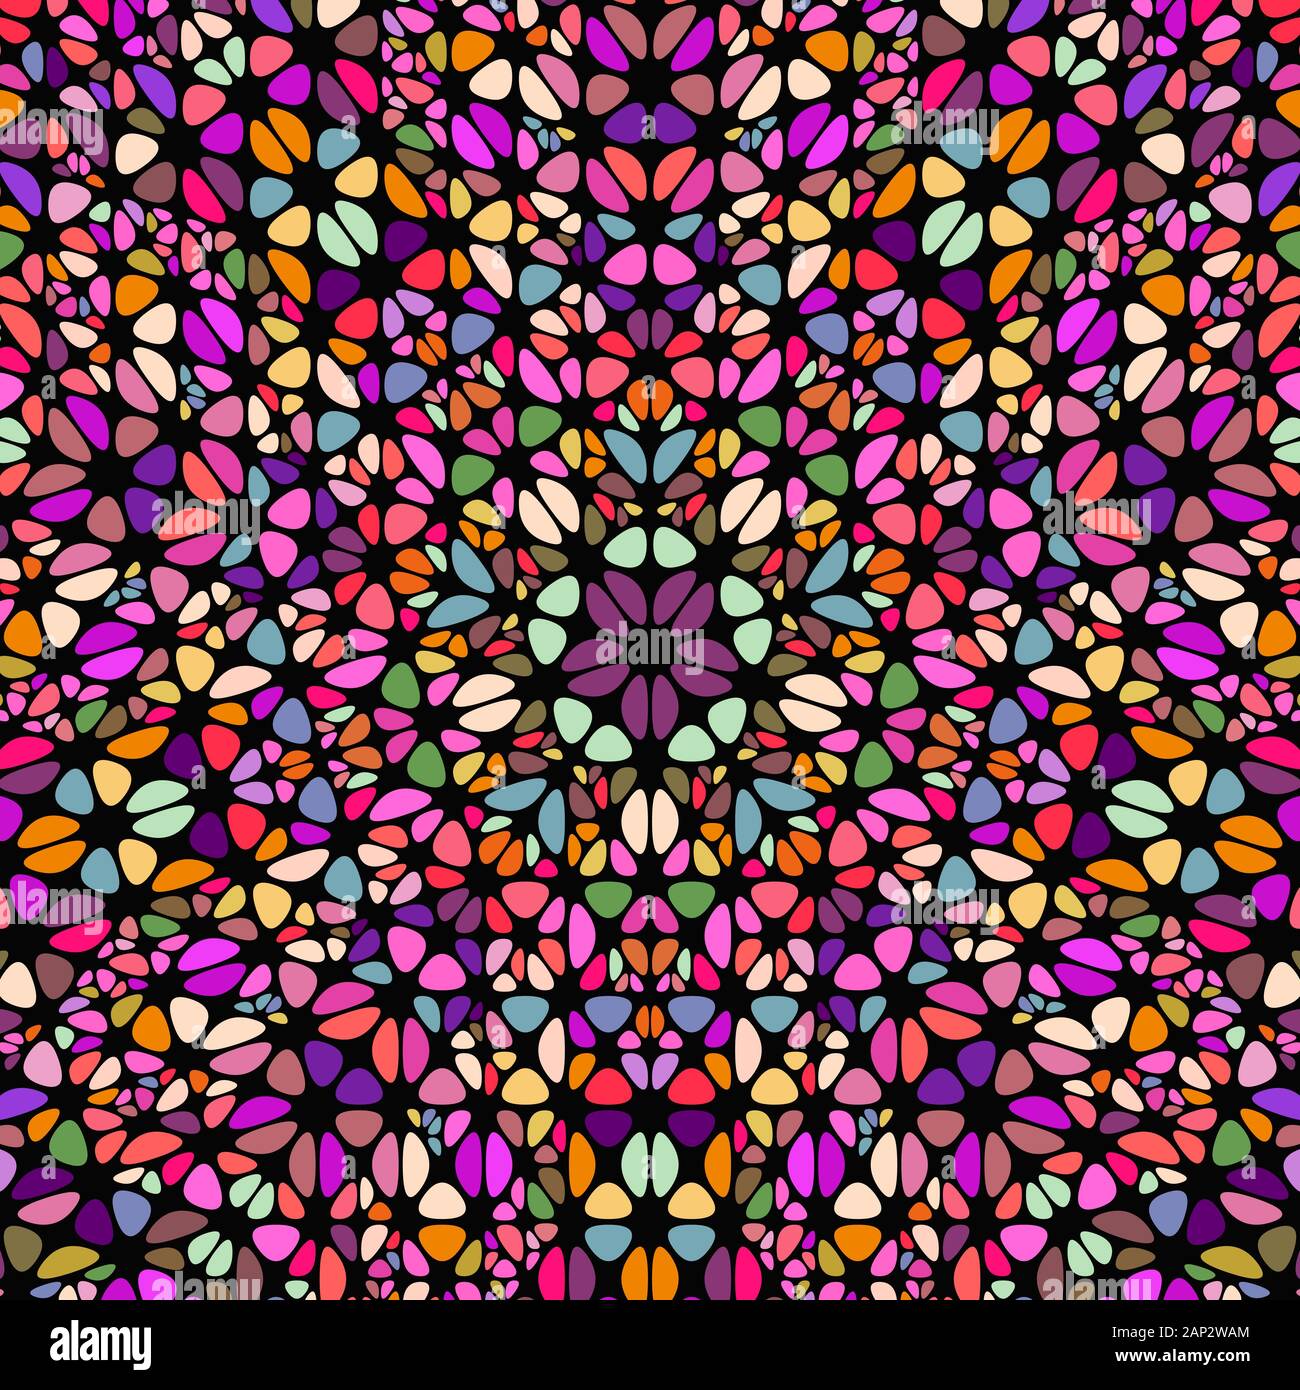 Bunte runde Mosaik Muster Hintergrund design-hypnotischen floral Rundschreiben Vektorgrafiken Stock Vektor